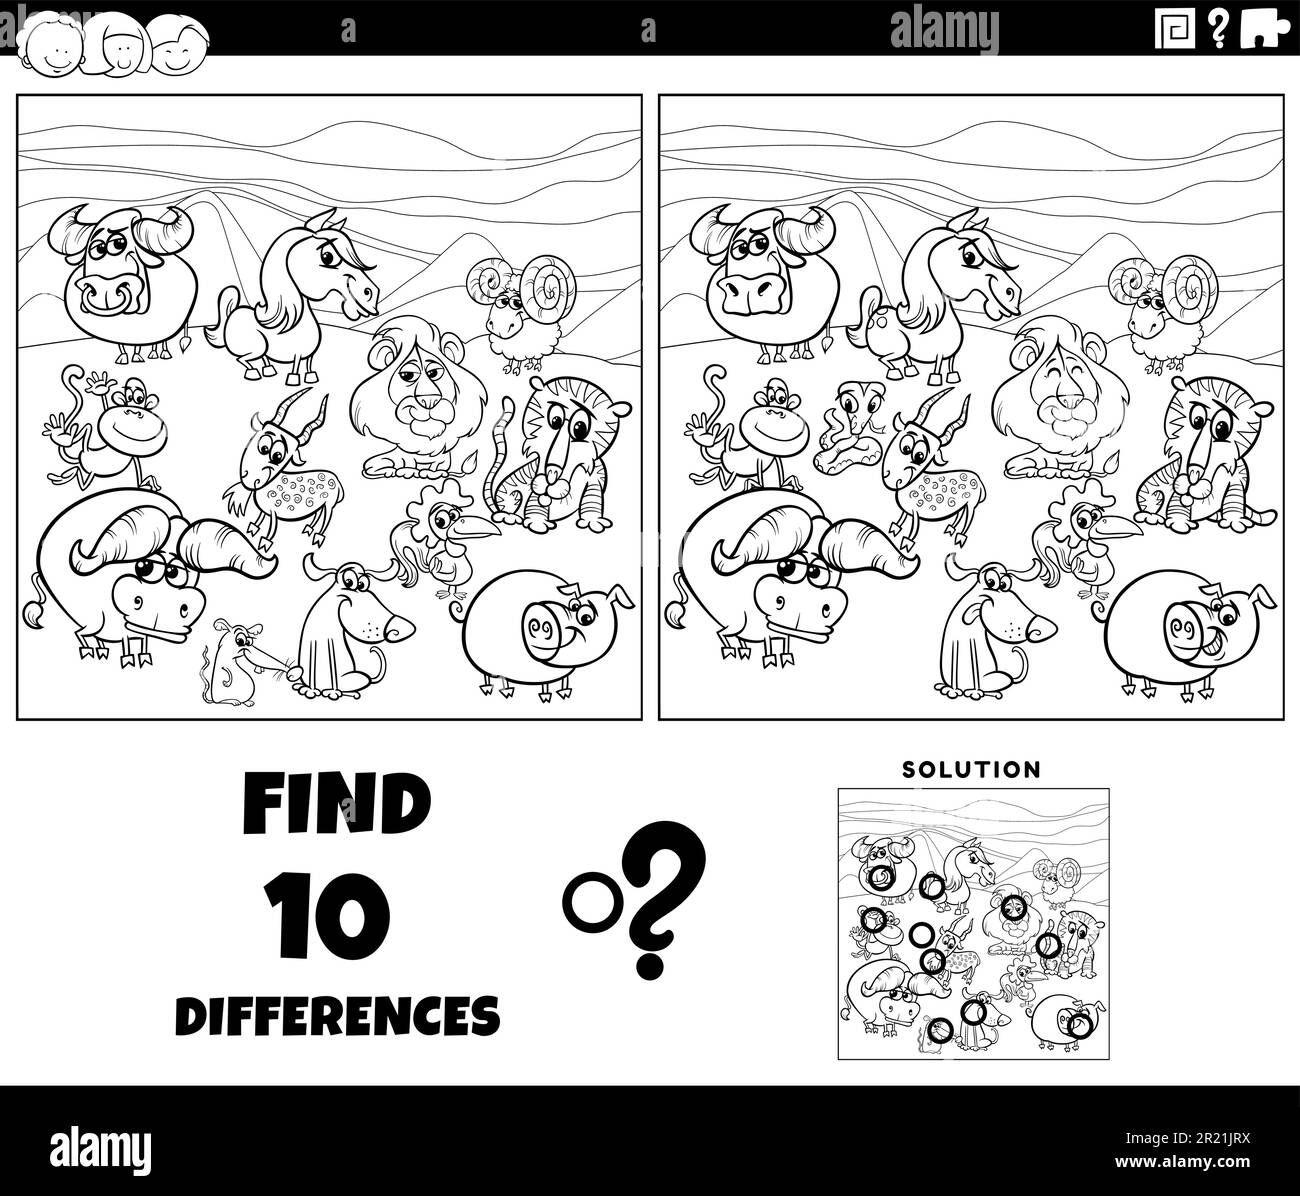 Dessin animé noir et blanc illustration de trouver les différences entre les images jeu éducatif avec les caractères animaux coloriage page Illustration de Vecteur